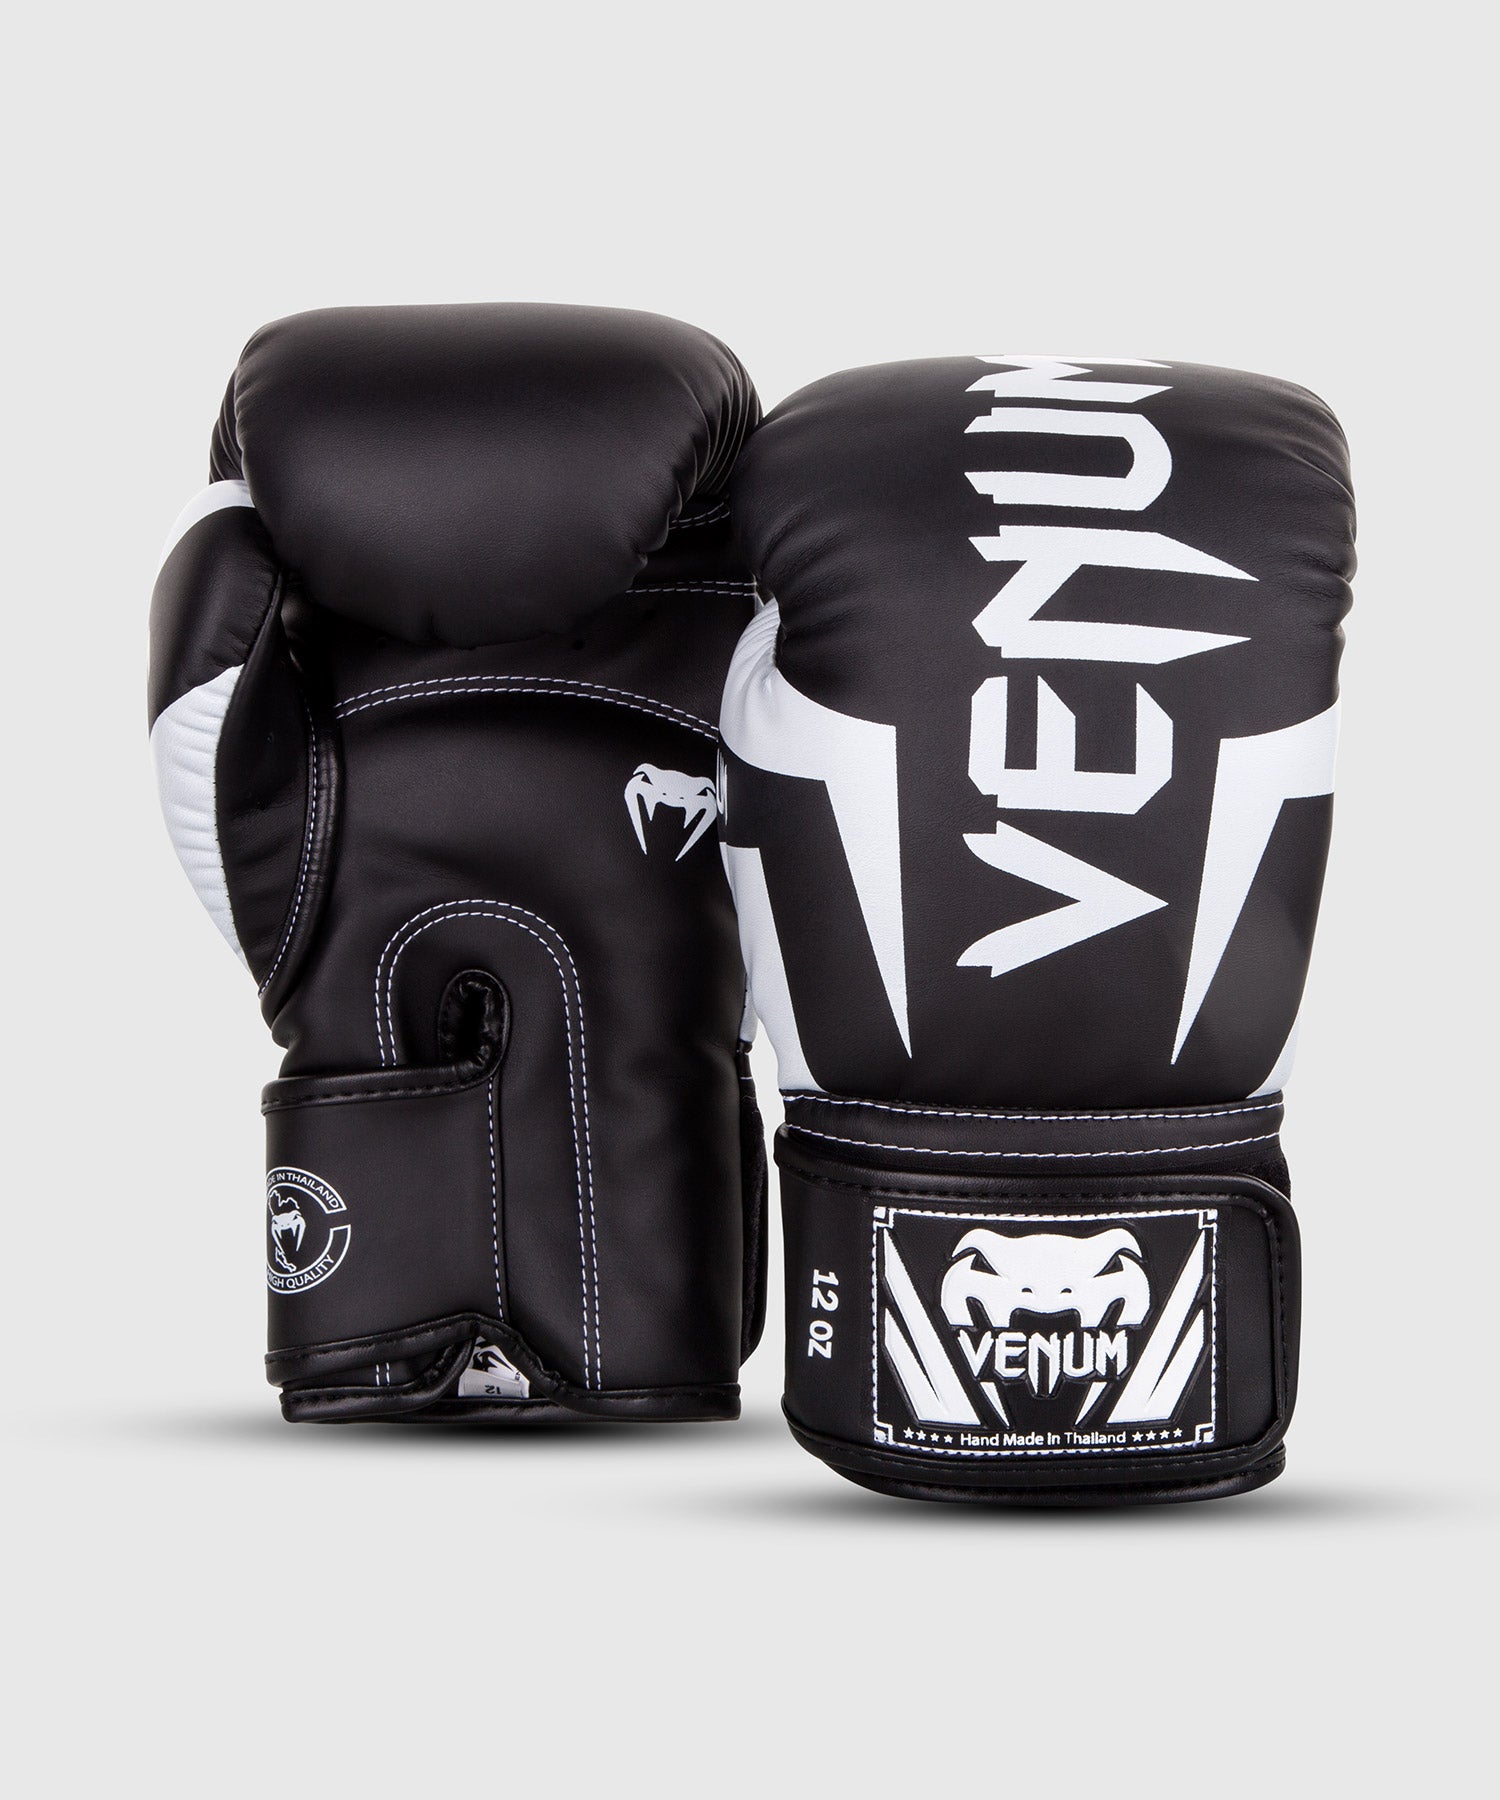 Venum Elite Evo ボクシンググローブ - グレー ホワイト - ボクシング